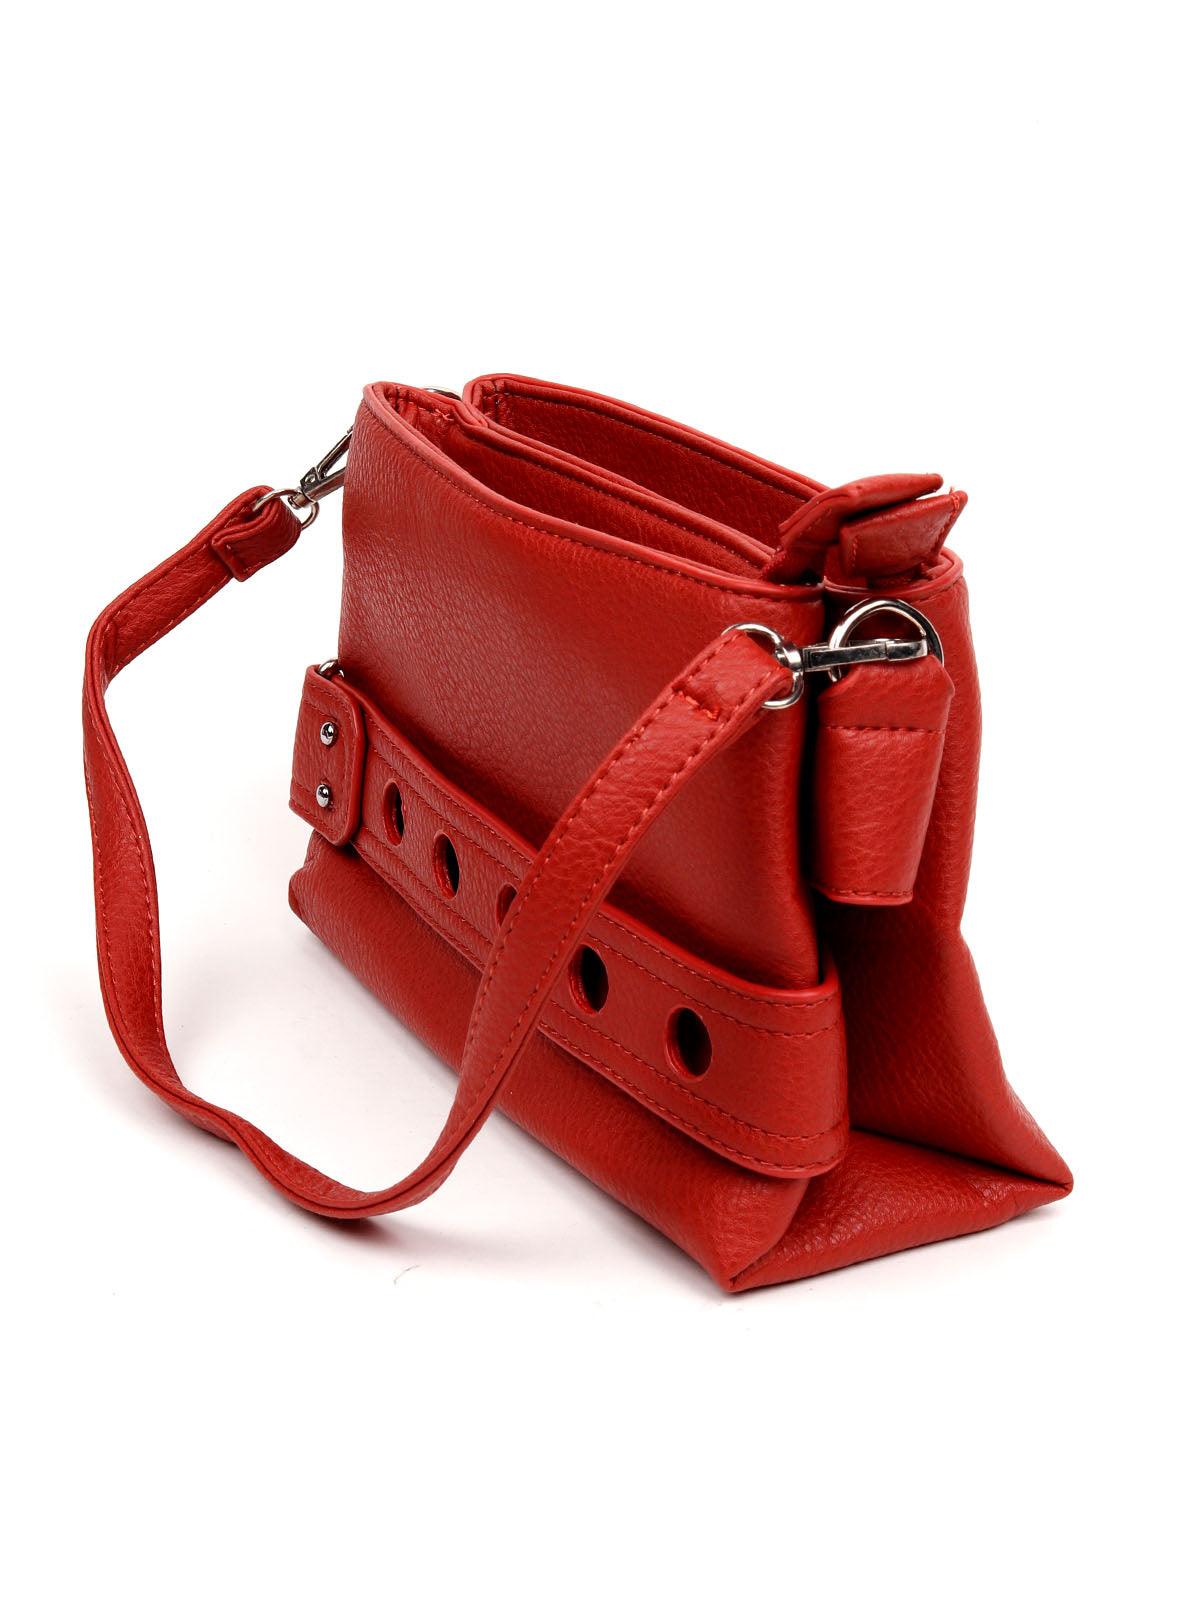 Cherry red sling bag for women - Odette